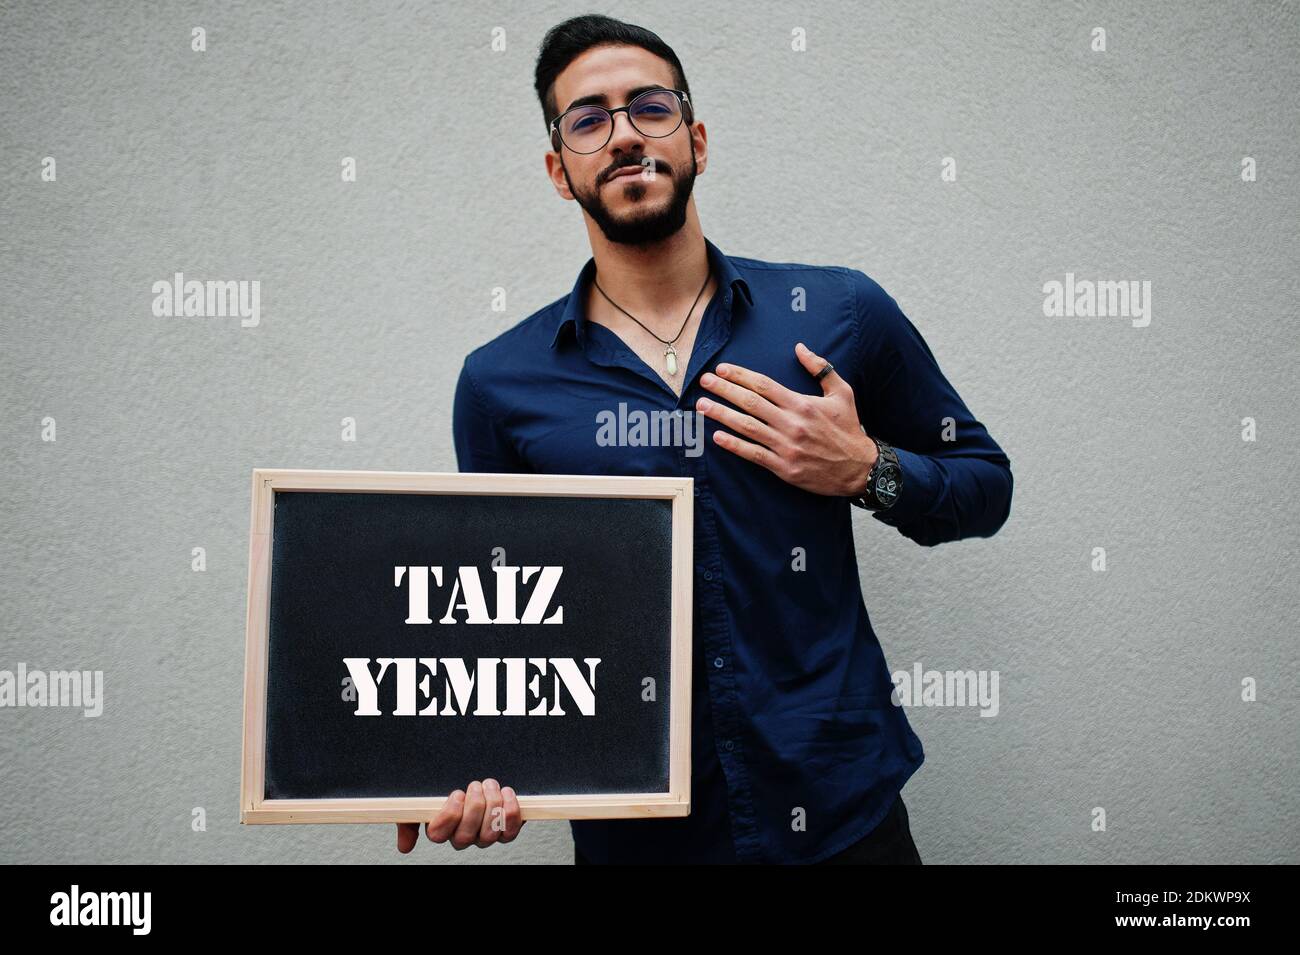 Araber tragen blaues Hemd und Brillen halten Brett mit Taiz Jemen Inschrift. Größte Städte in der islamischen Welt Konzept. Stockfoto